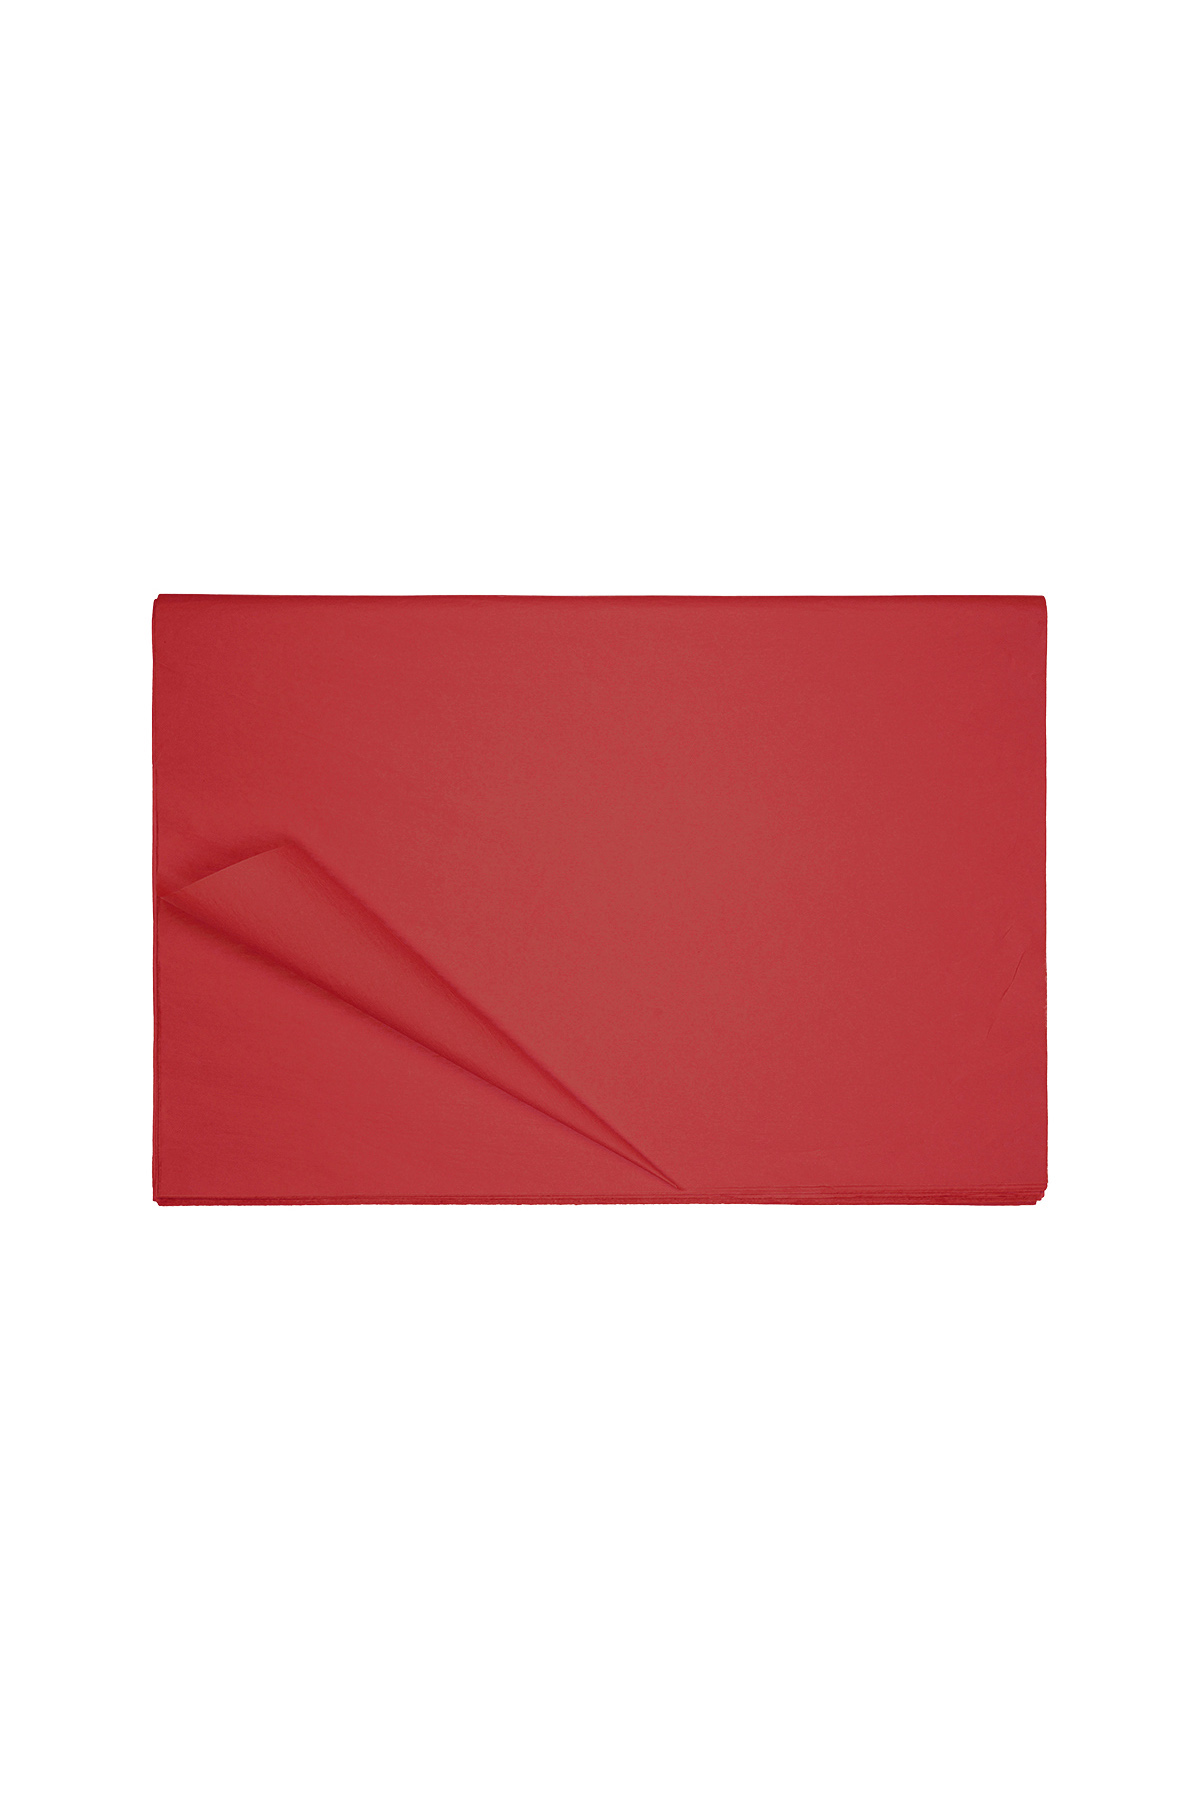 Tissuepapier klein - rood Papier h5 